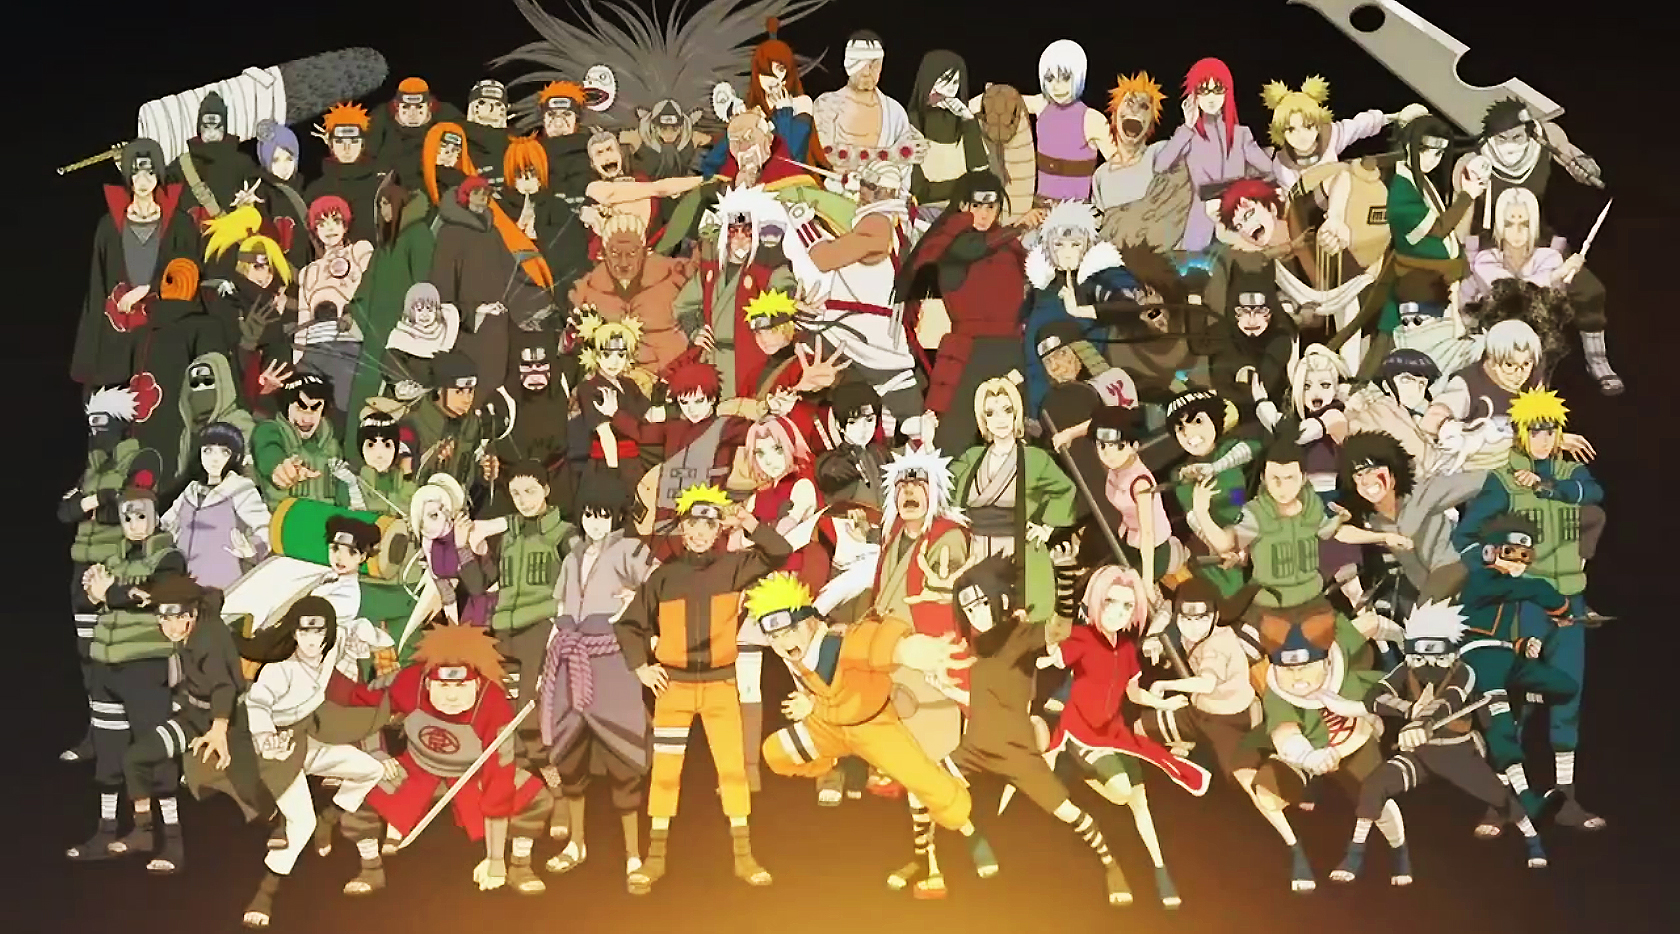 todos los fondos de pantalla de anime hd,personas,grupo social,multitud,dibujos animados,comunidad